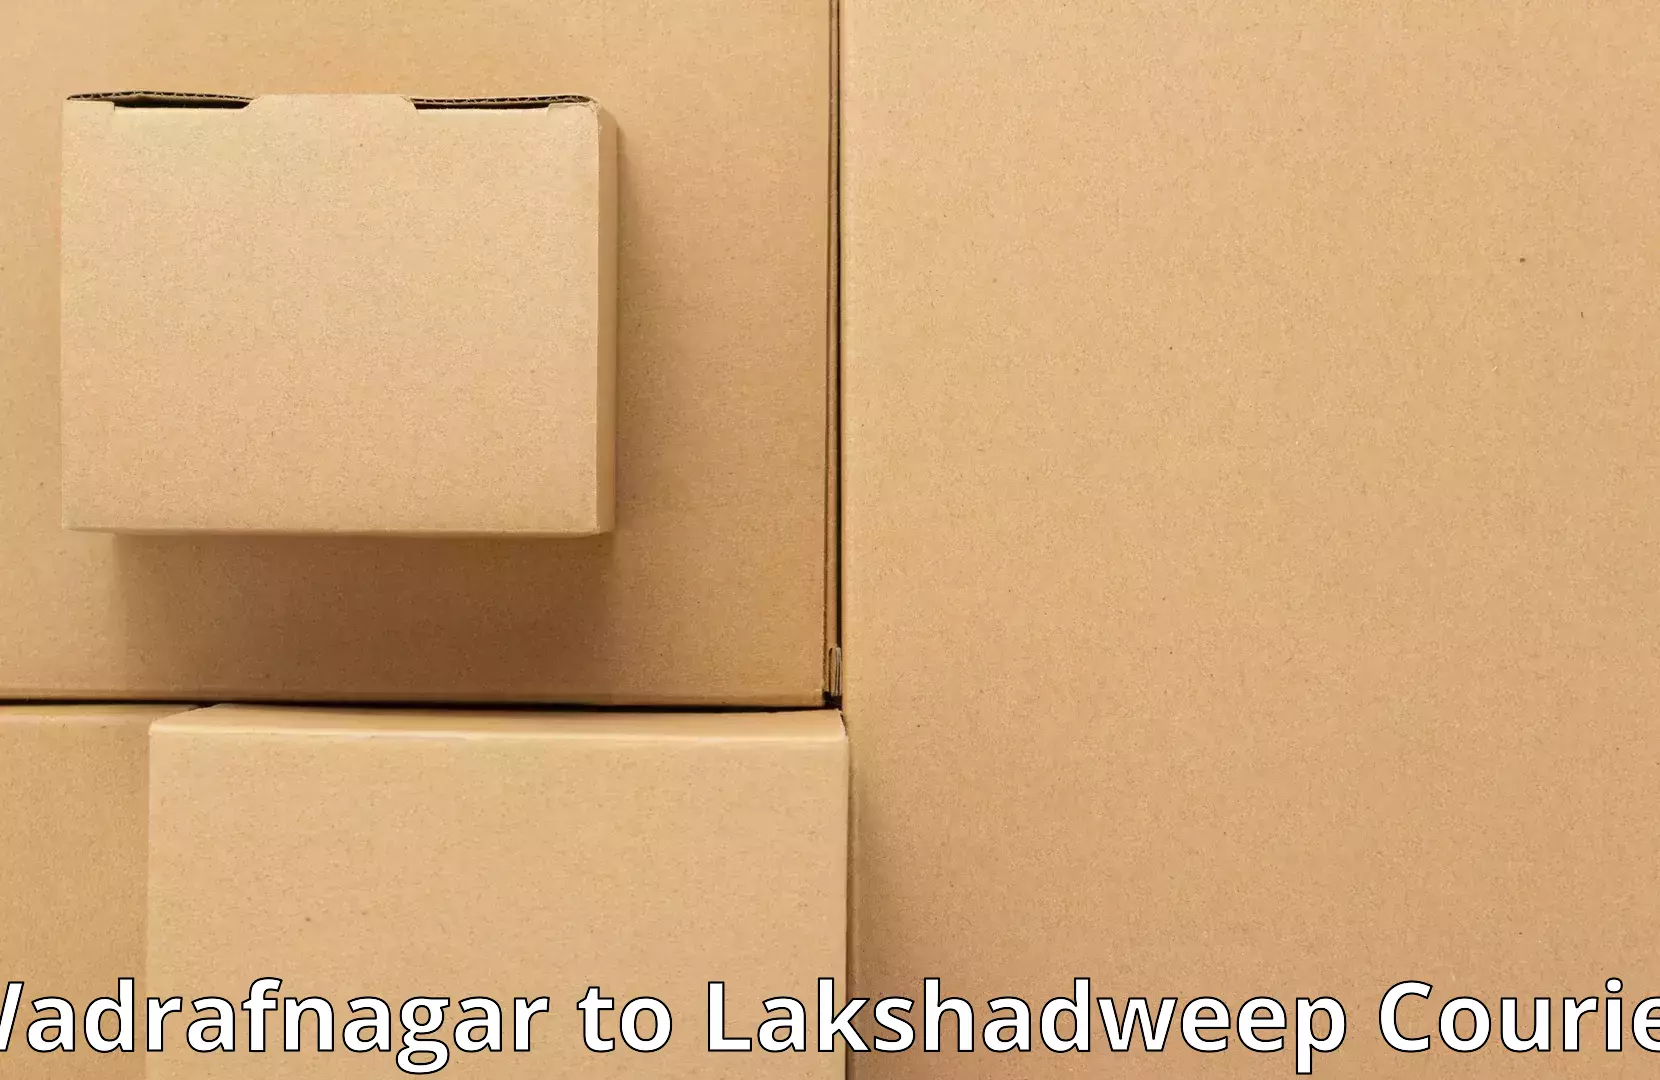 Furniture moving plans Wadrafnagar to Lakshadweep